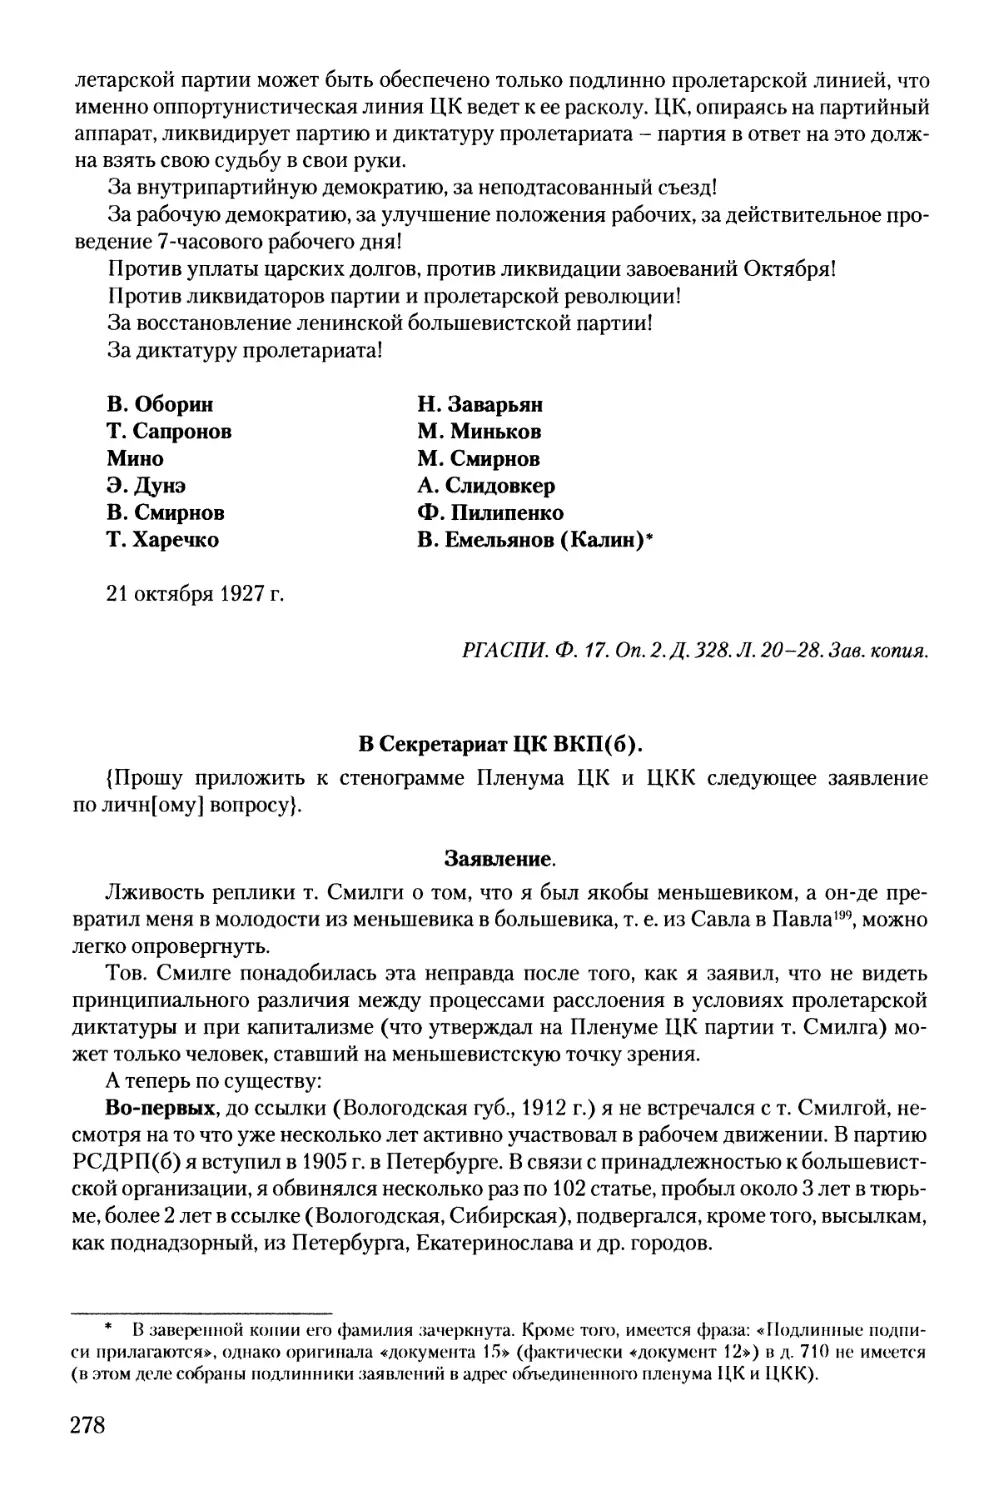 Заявления Н. М. Анцеловича, И. Е. Любимова